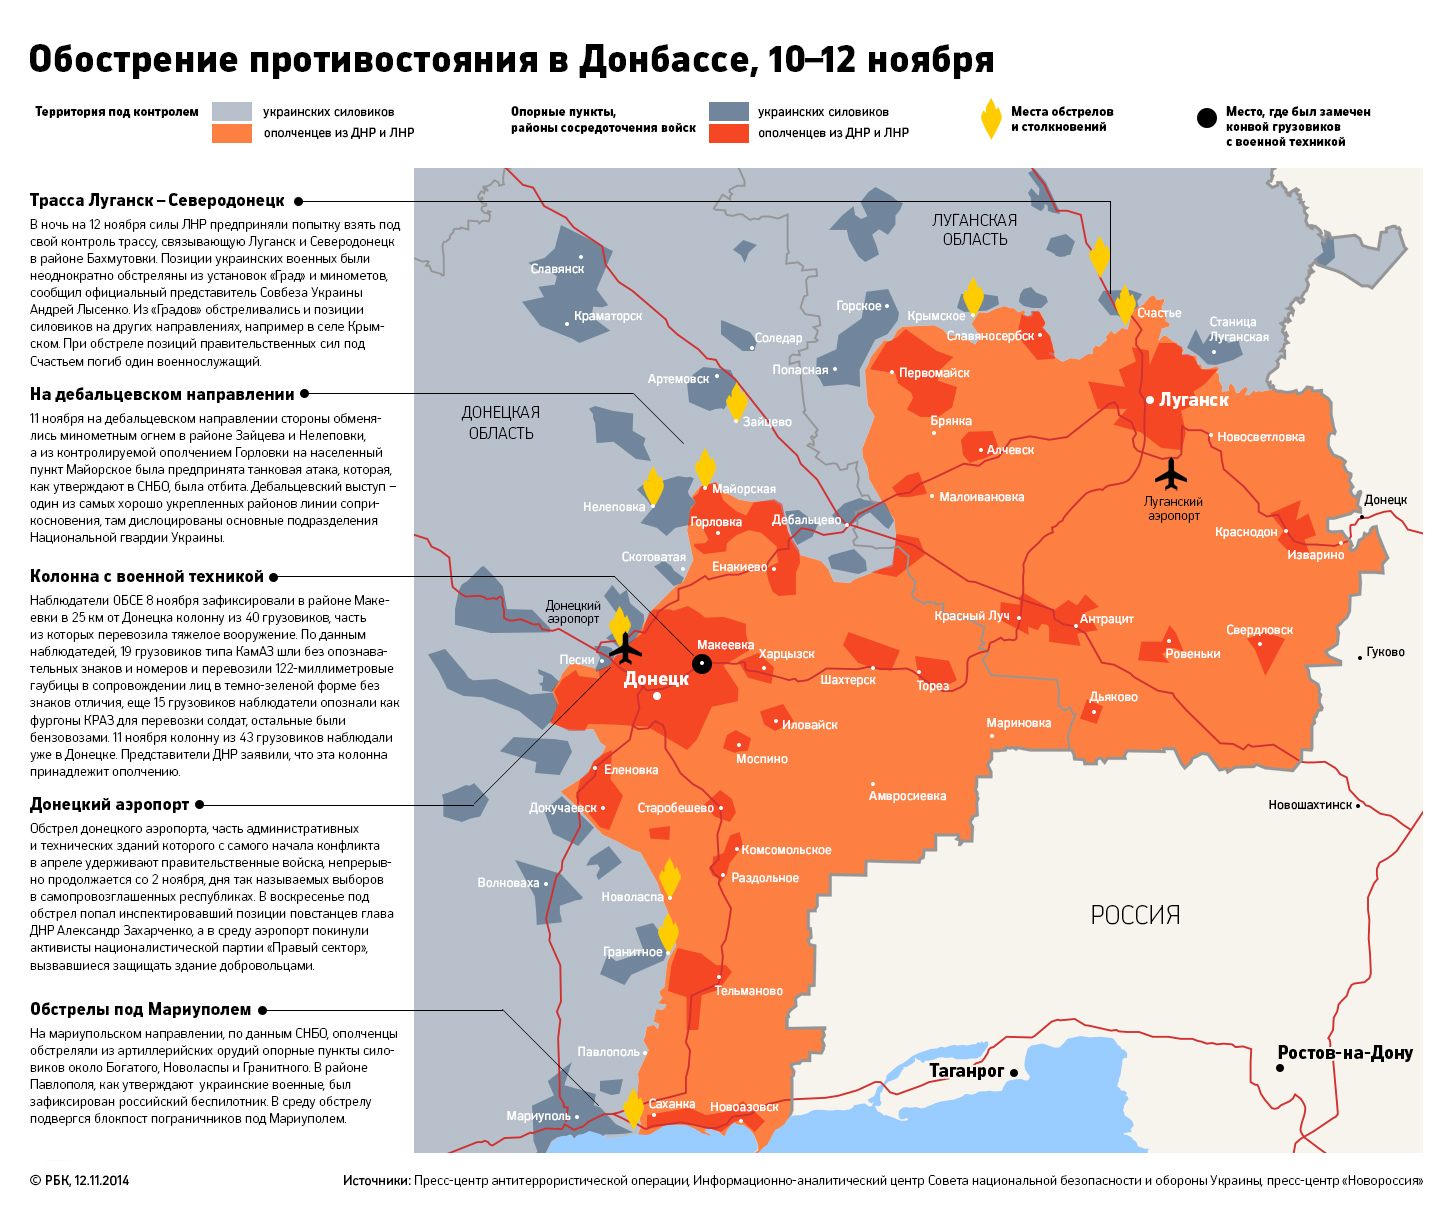 Донбасс горячеет: Киев и ополченцы готовятся к возобновлению войны